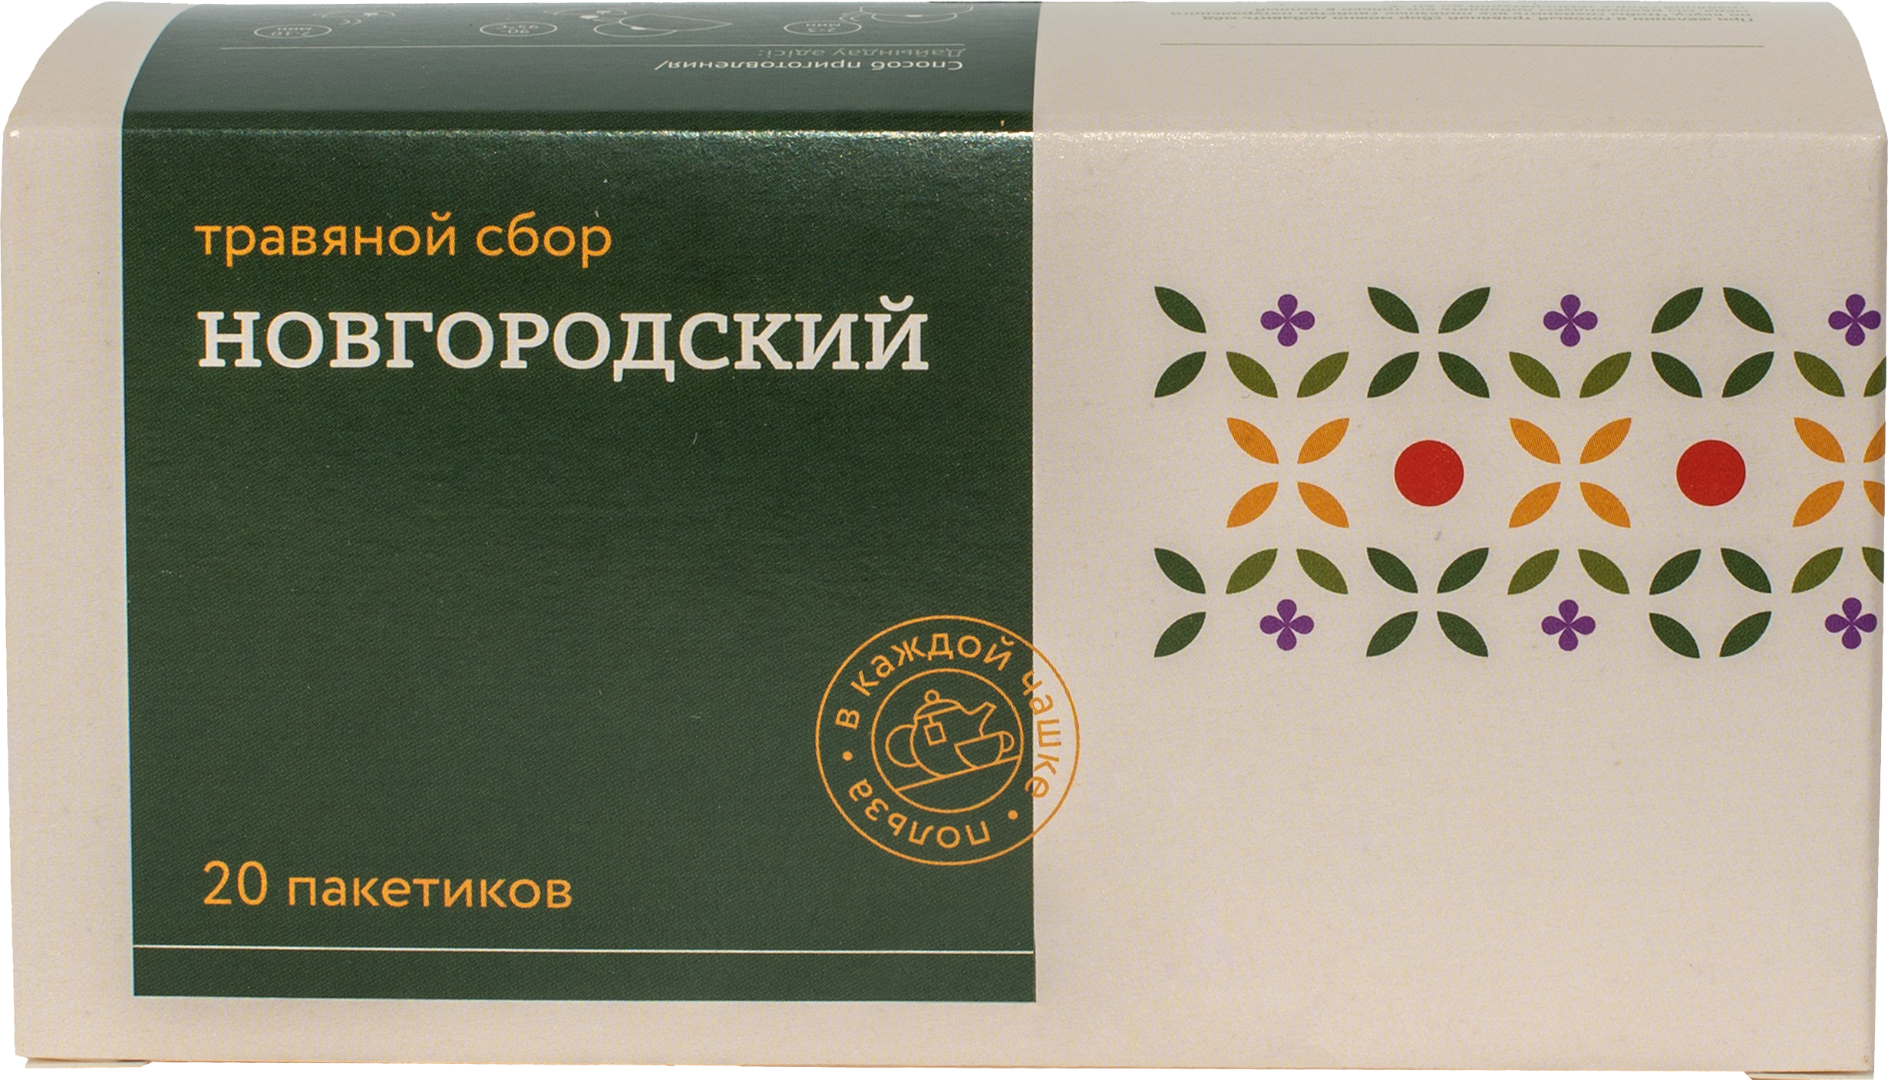 Травяной сбор ТРАВЫ И ПЧЕЛЫ Новгородский 40 г 202г6шт картонная коробка